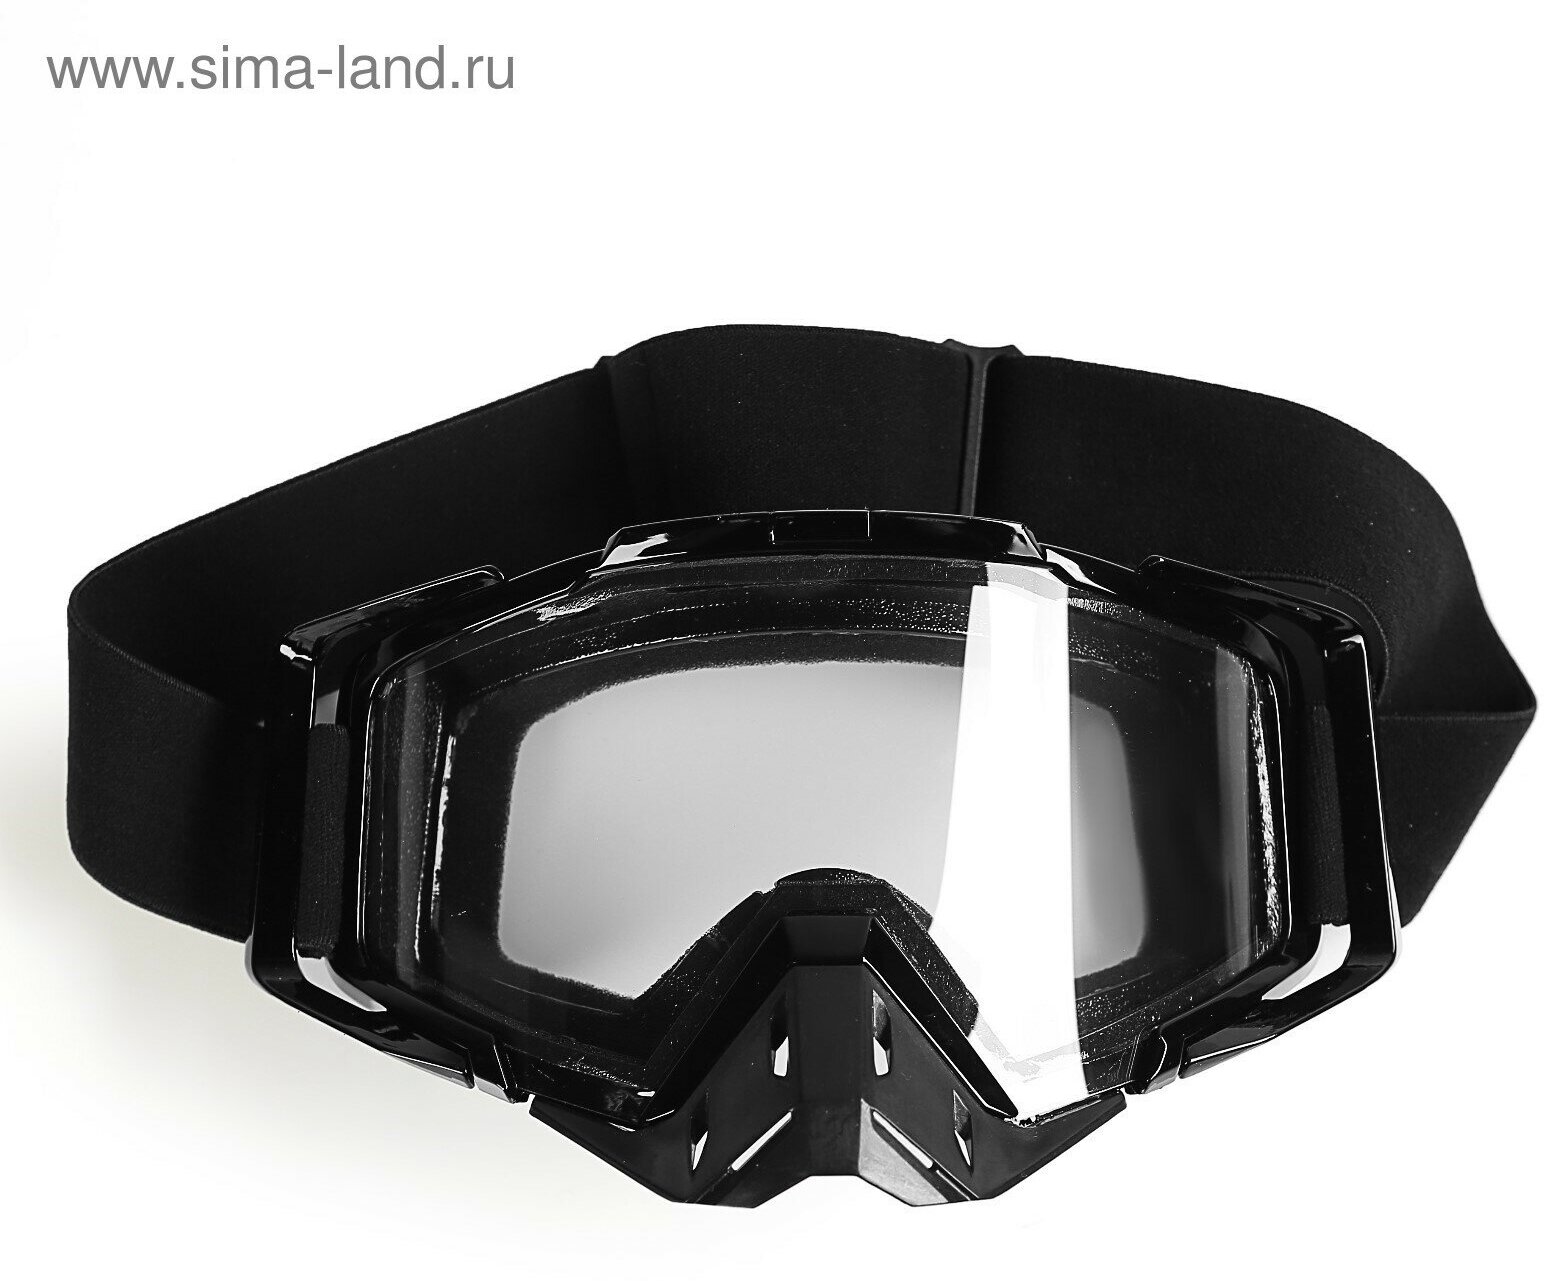 Очки-маска со съемной защитой носа стекло прозрачное черные